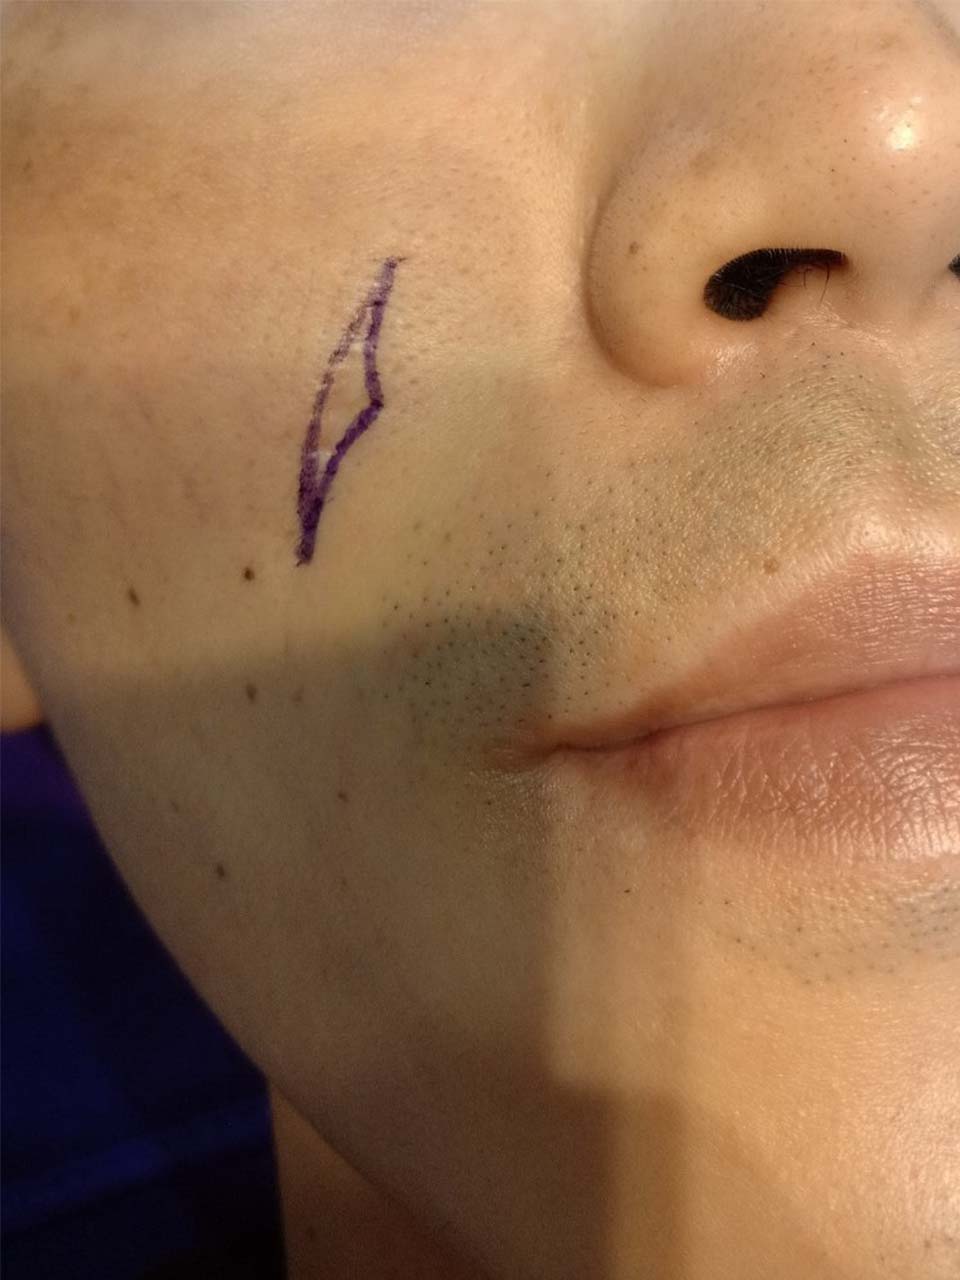 傷口疤痕重新修補 - 皮膚微創手術後